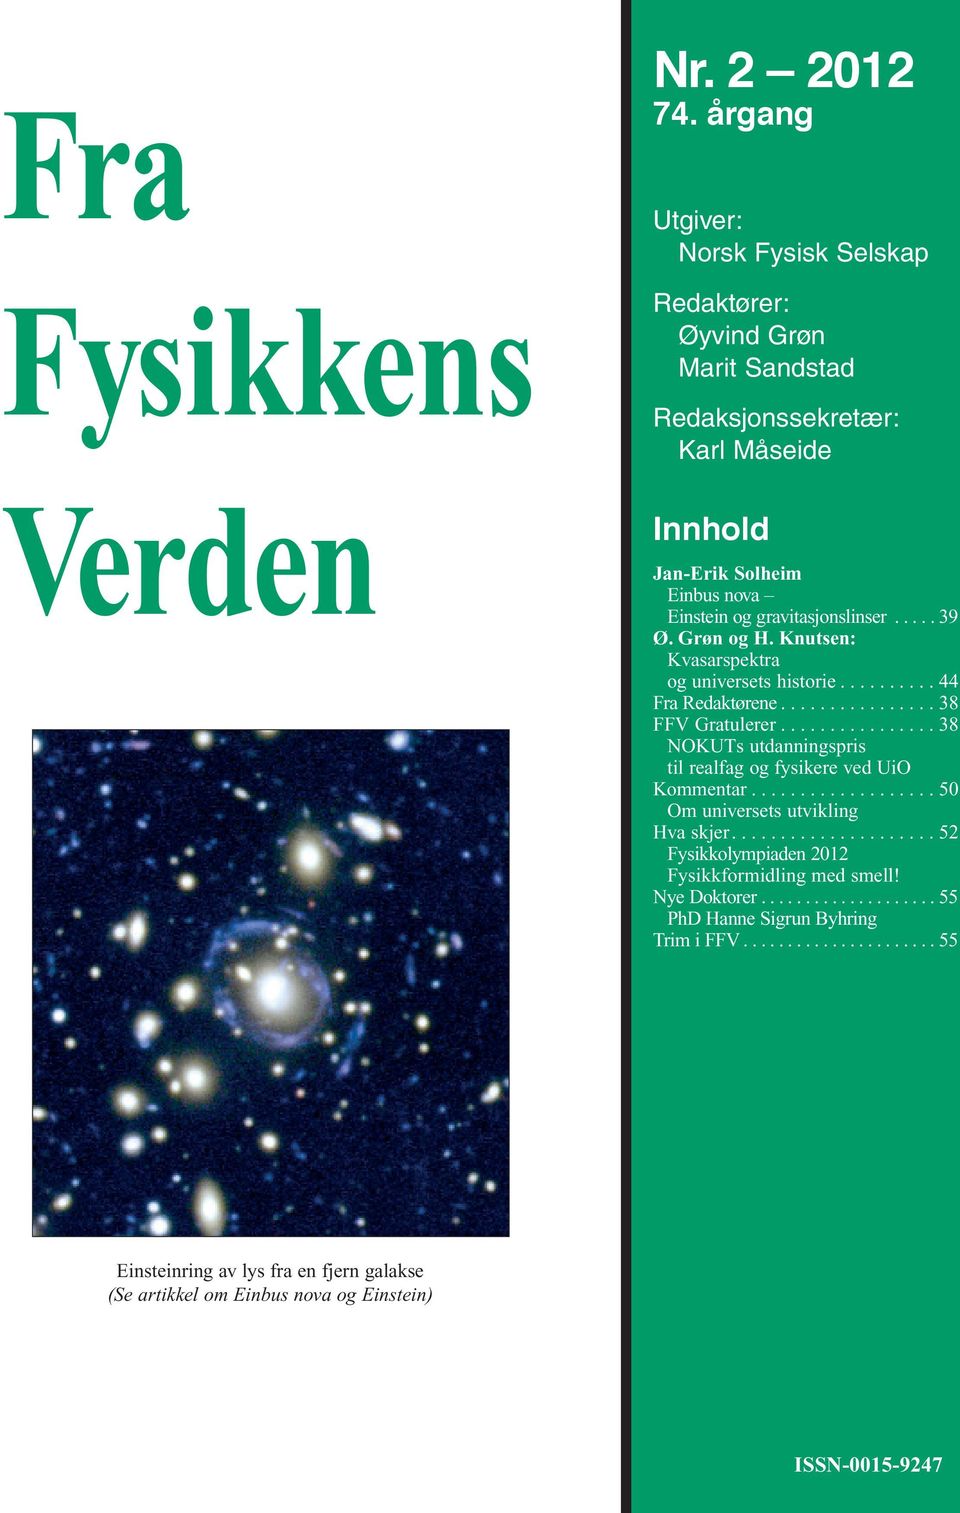 Grøn og H. Knutsen: Kvasarspektra og universets historie.......... 44 Fra Redaktørene................ 38 FFV Gratulerer................ 38 NOKUTs utdanningspris til realfag og fysikere ved UiO Kommentar.